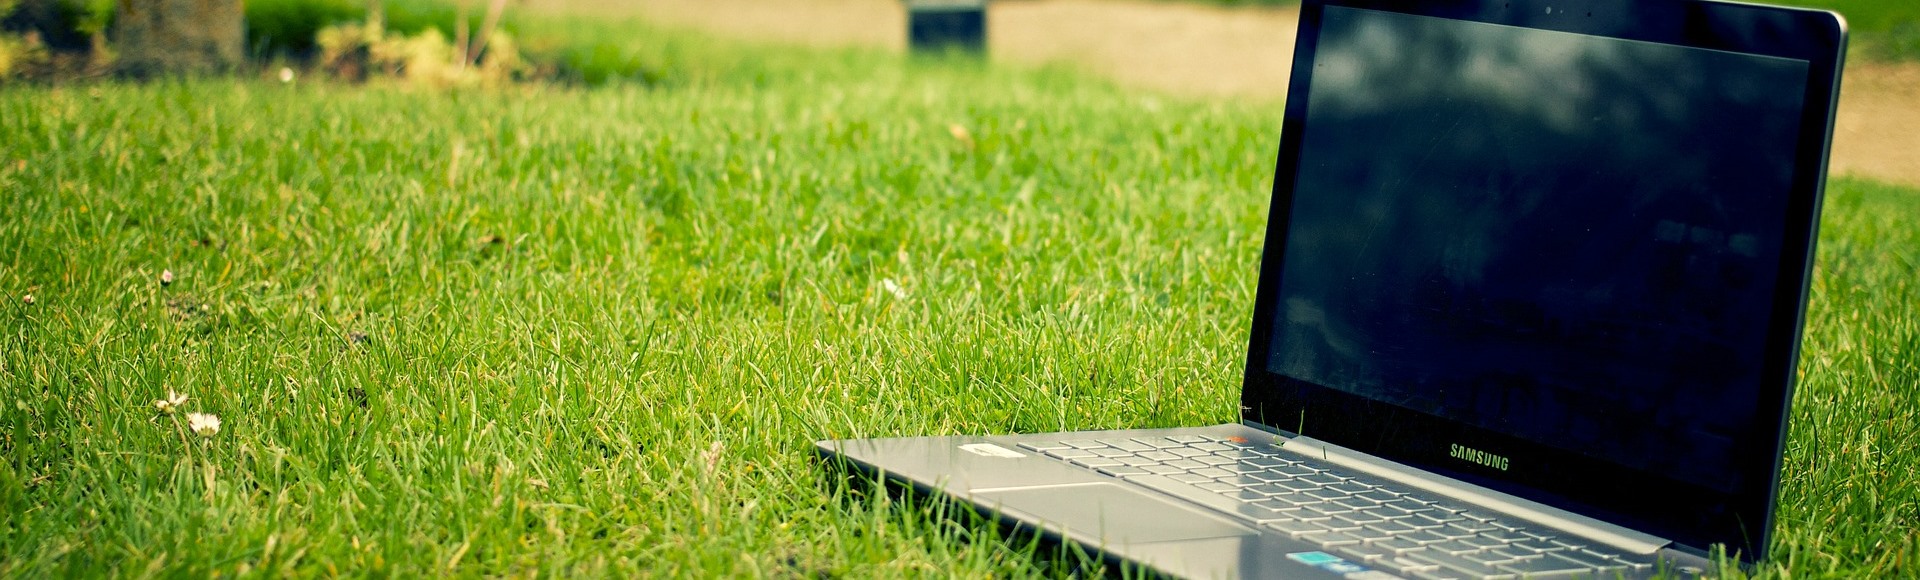 Altötting Gewerbeflächen, Laptop auf Rasen, Foto: Pixabay